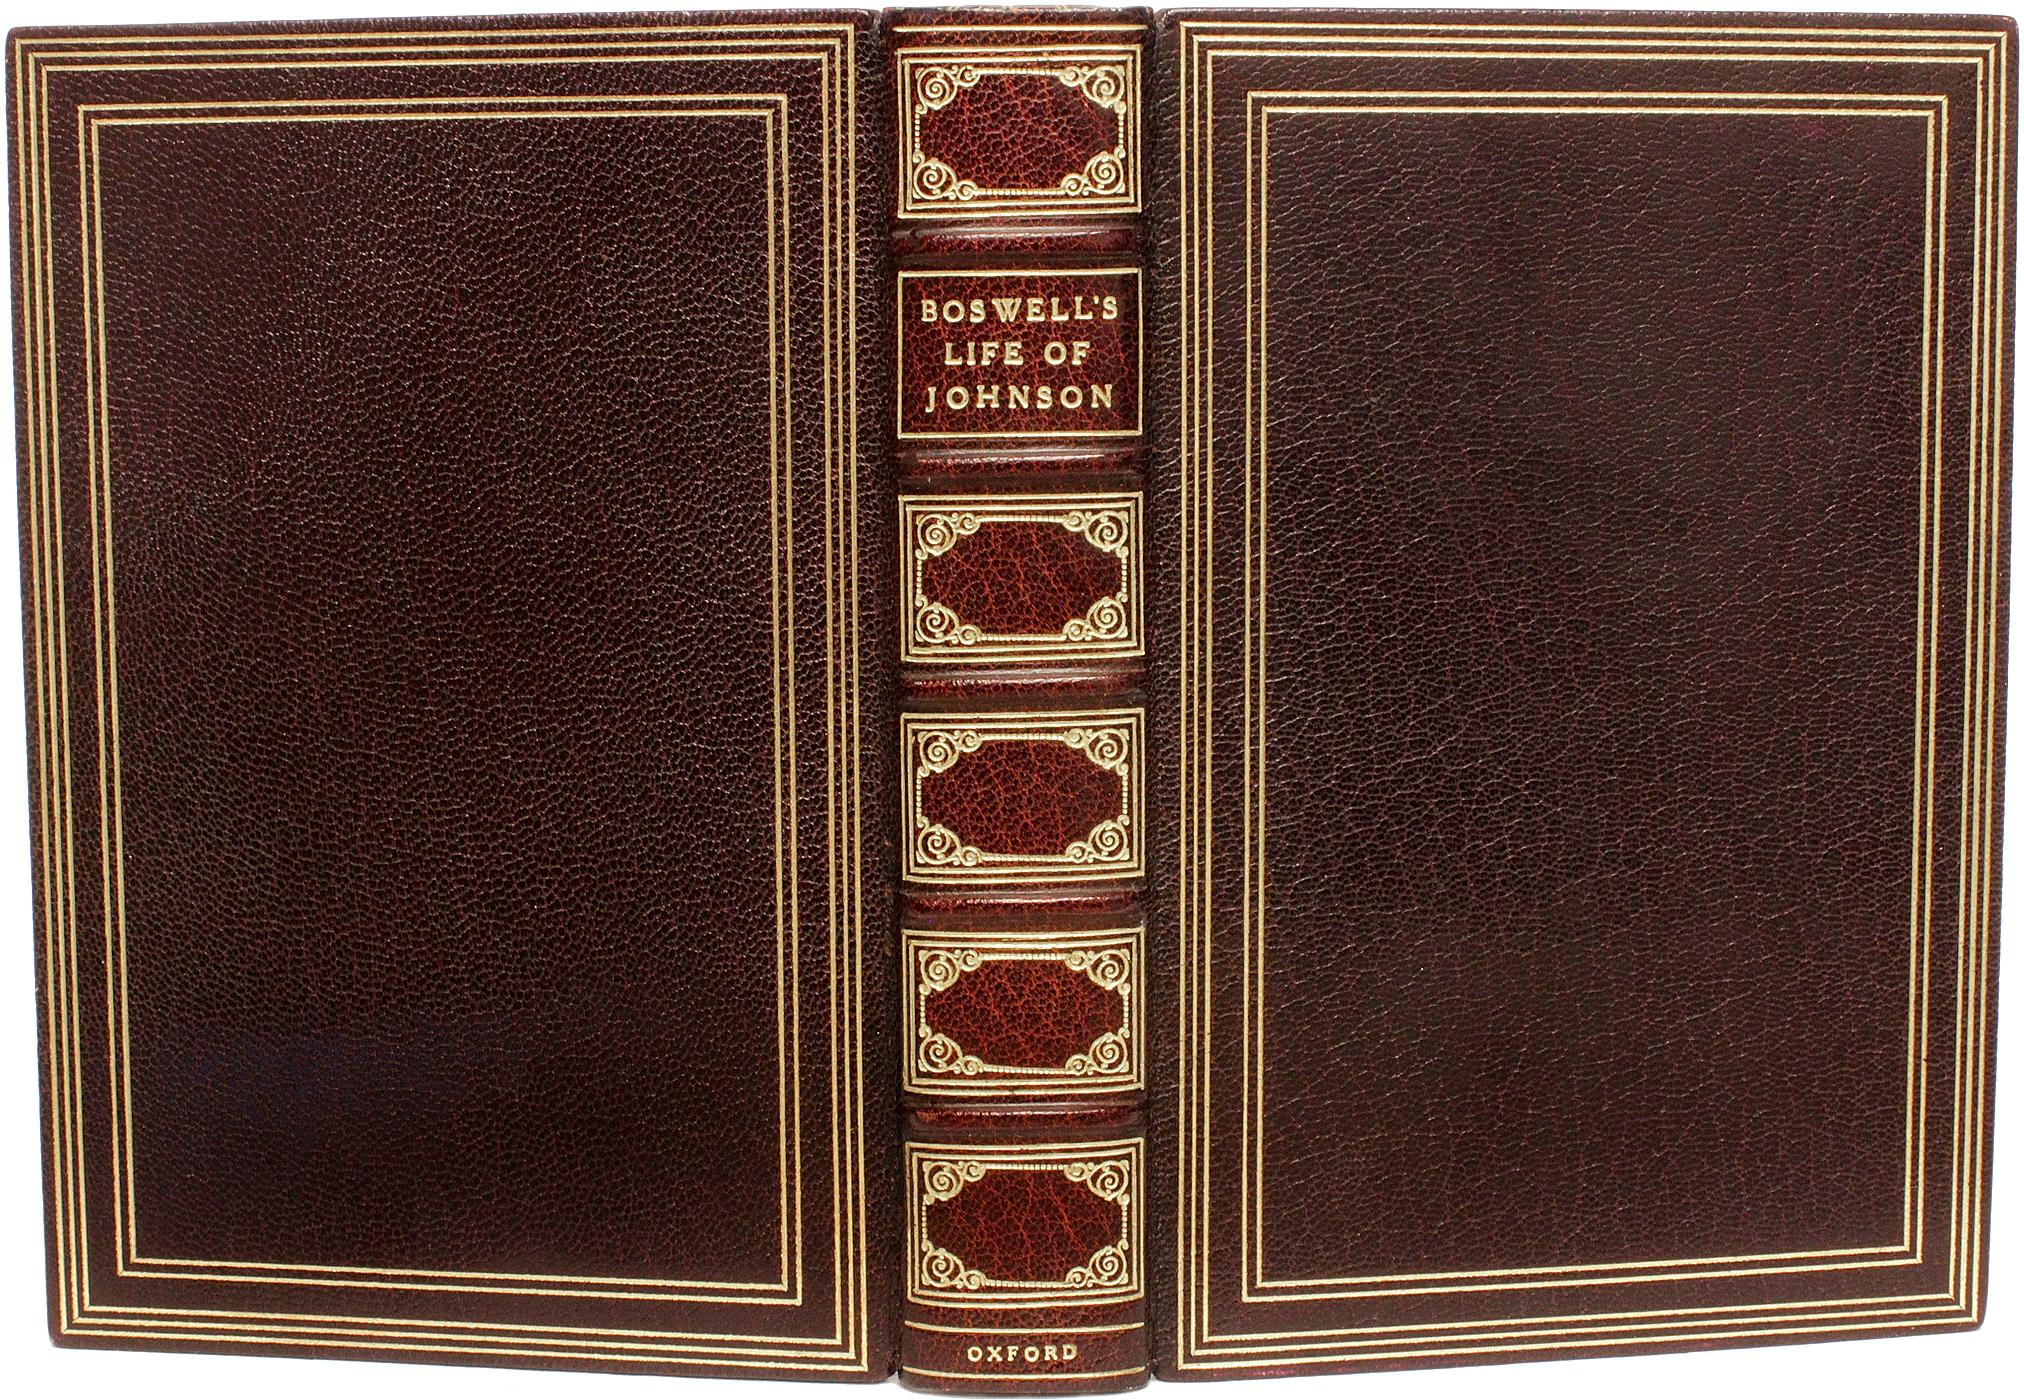 AUTOR: BOSWELL, James

TITEL: Boswells Leben von Johnson.

VERLAG: Oxford University Press, 1924.

BESCHREIBUNG: INDIEN PAPIER AUSGABE. 2 Bände in 1 gebunden, 7-3/8